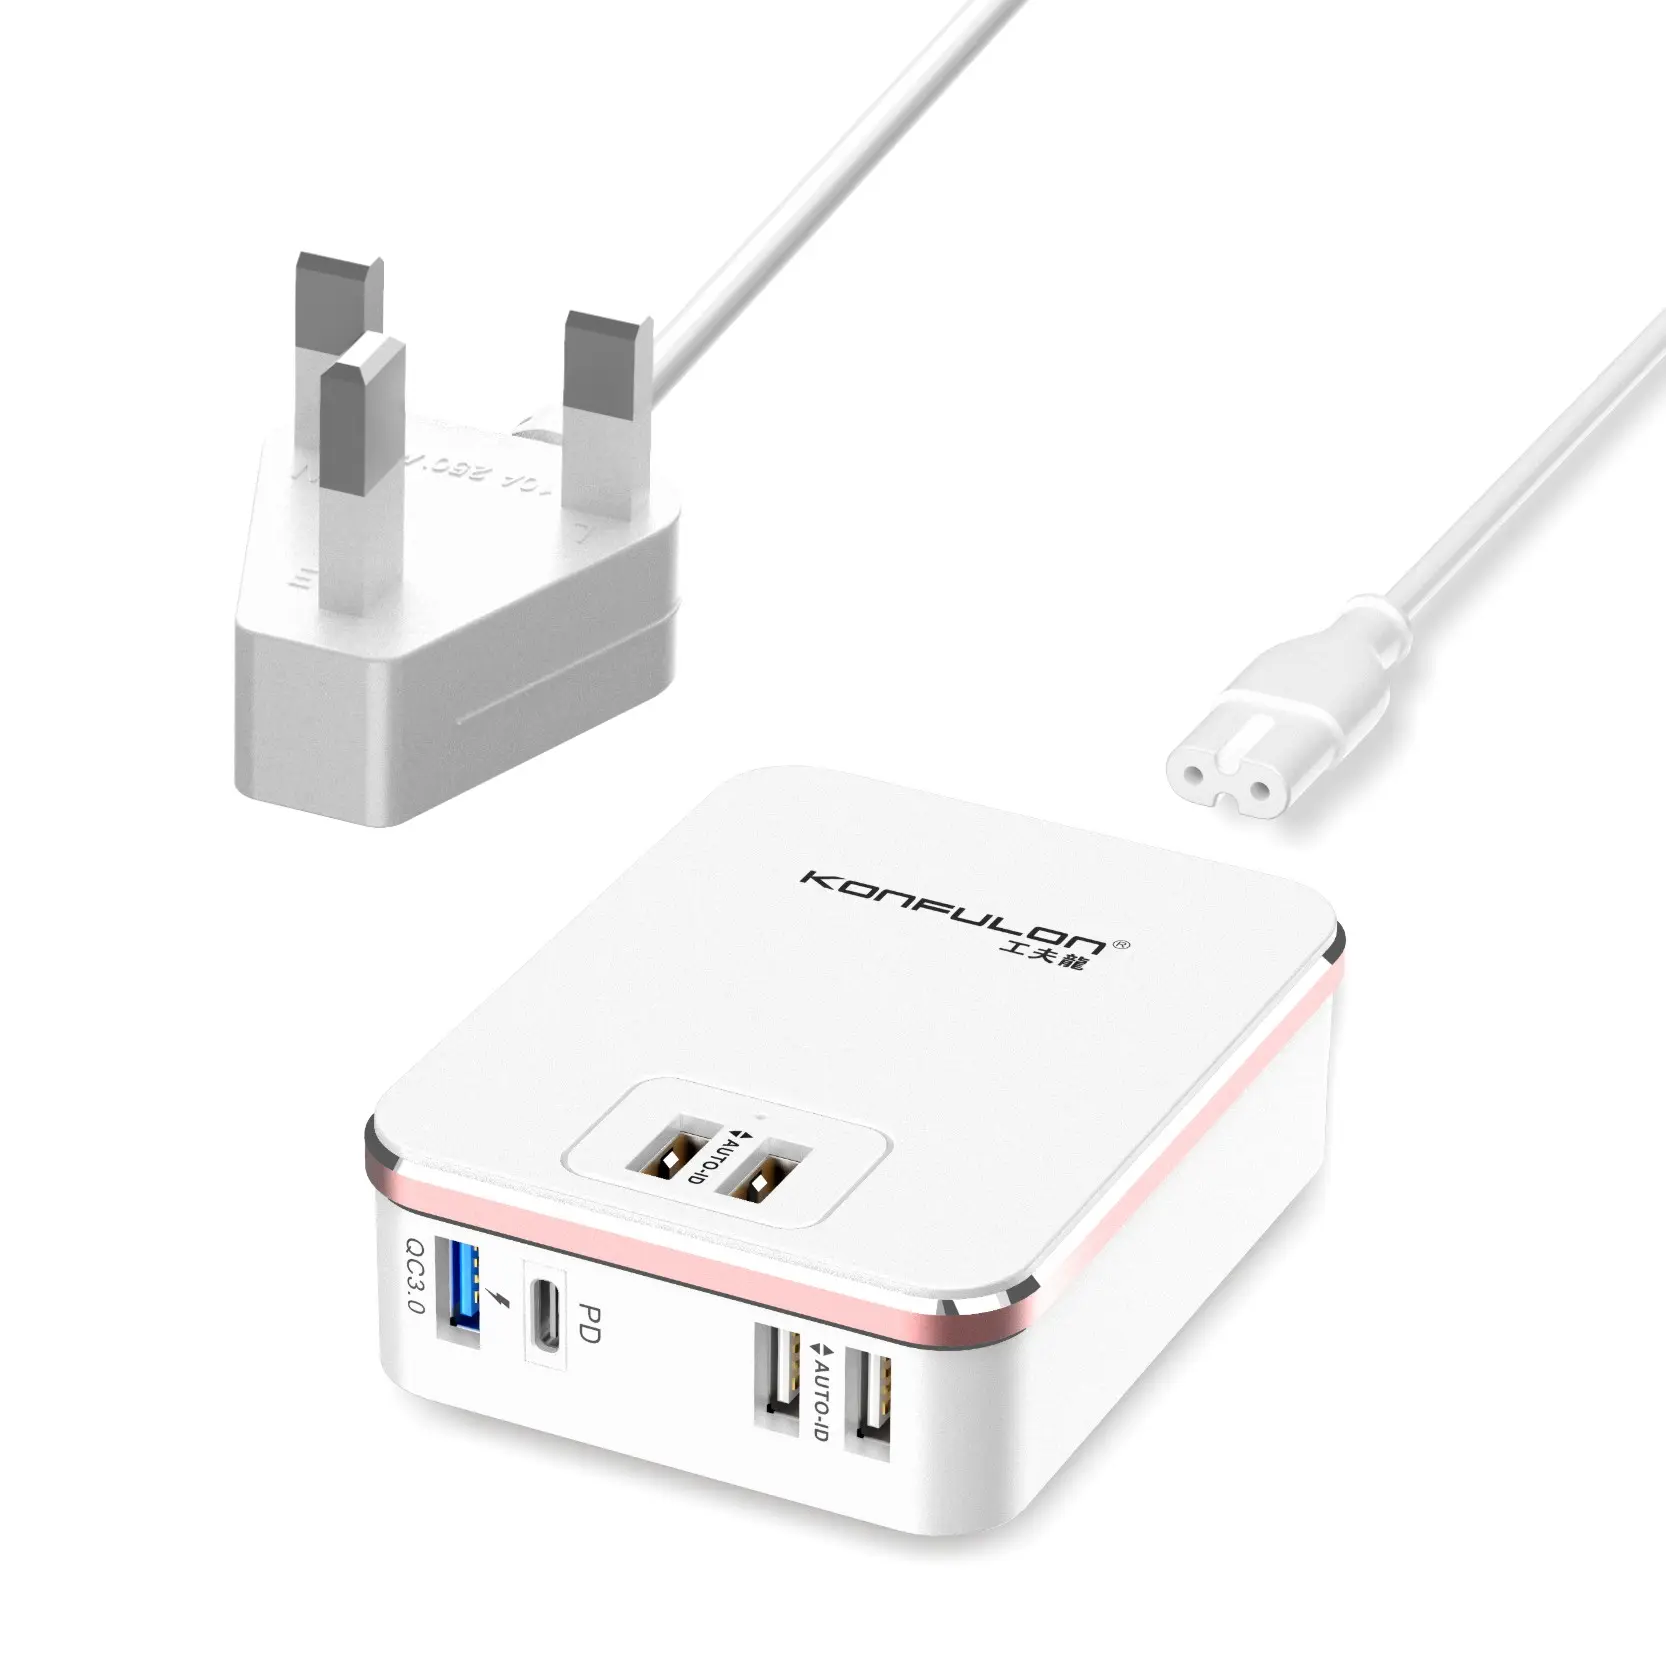 Konfulon 6 adaptador de alimentación USB de la estación de carga de puerto USB QC3.0 rápido cargador de pared para teléfonos móviles